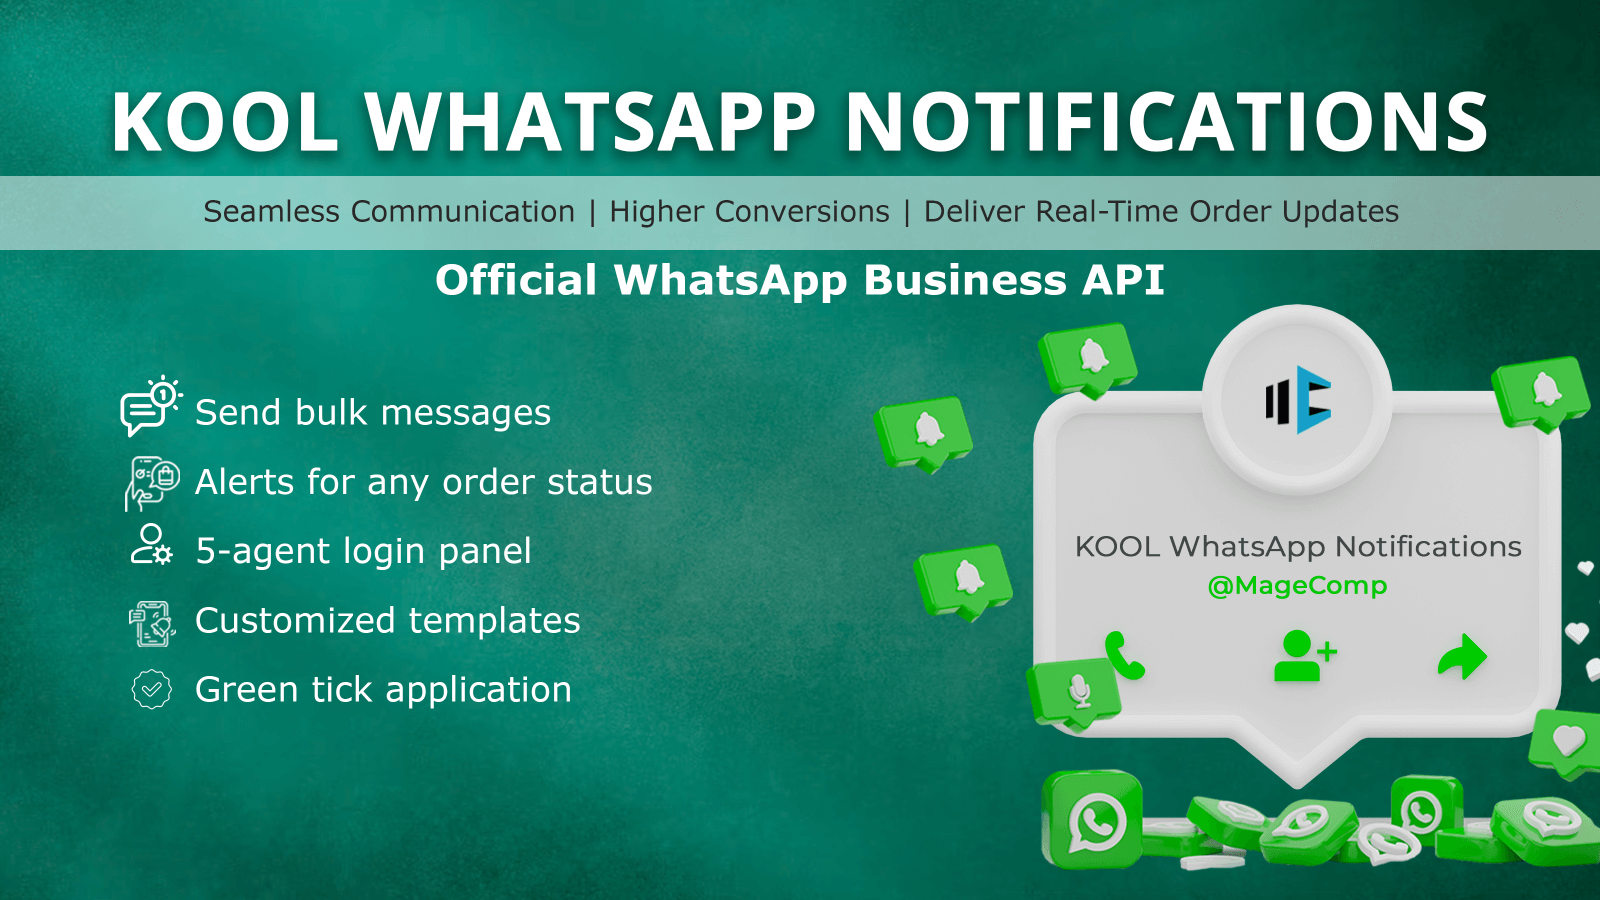 KOOL WhatsApp Notifications Shopify App